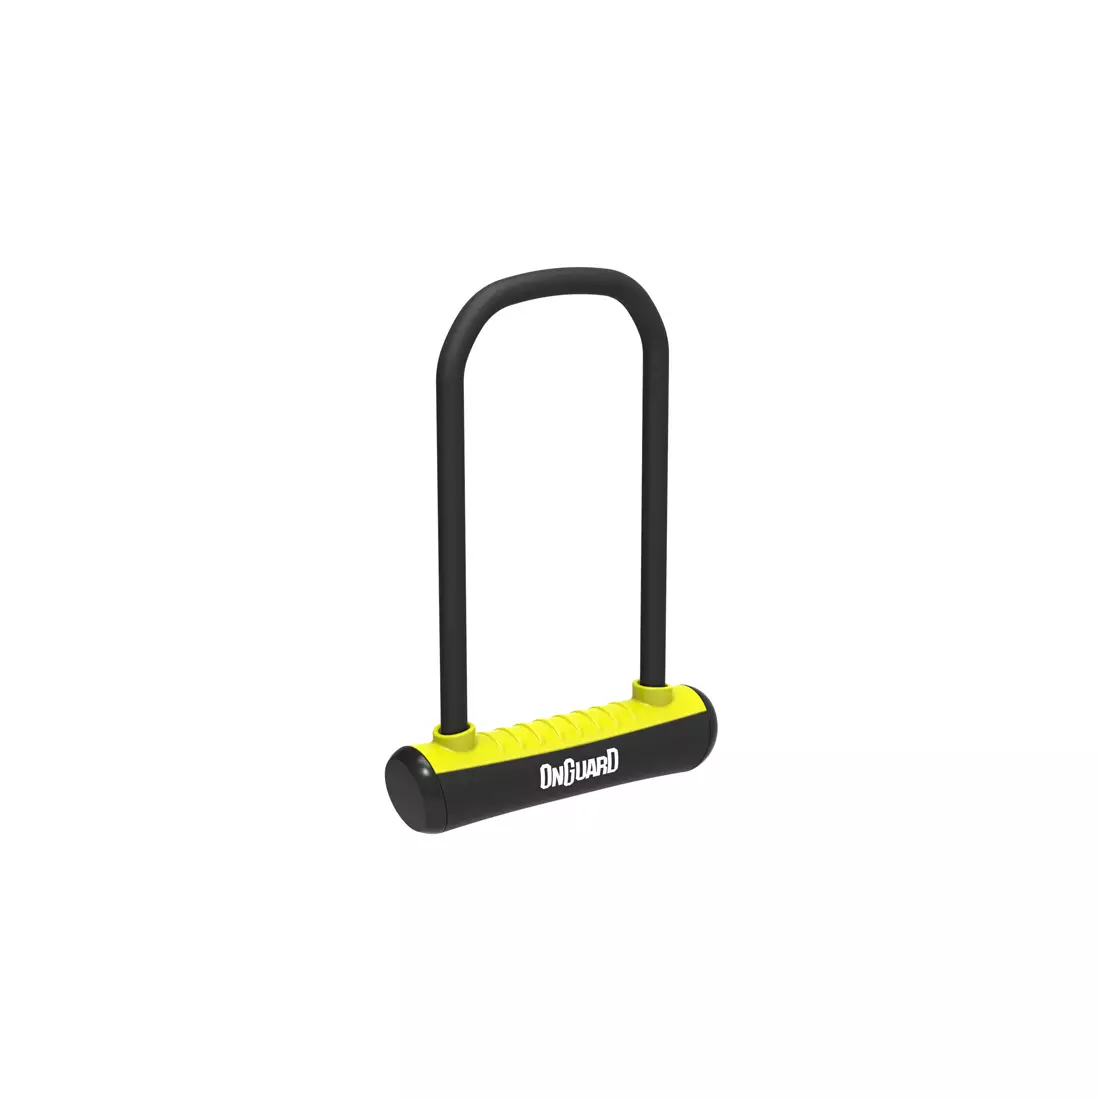 ONGUARD Fahrradverschluss Neon u-lock 292mm + 2 x Schlüssel, gelb ONG-8152YL